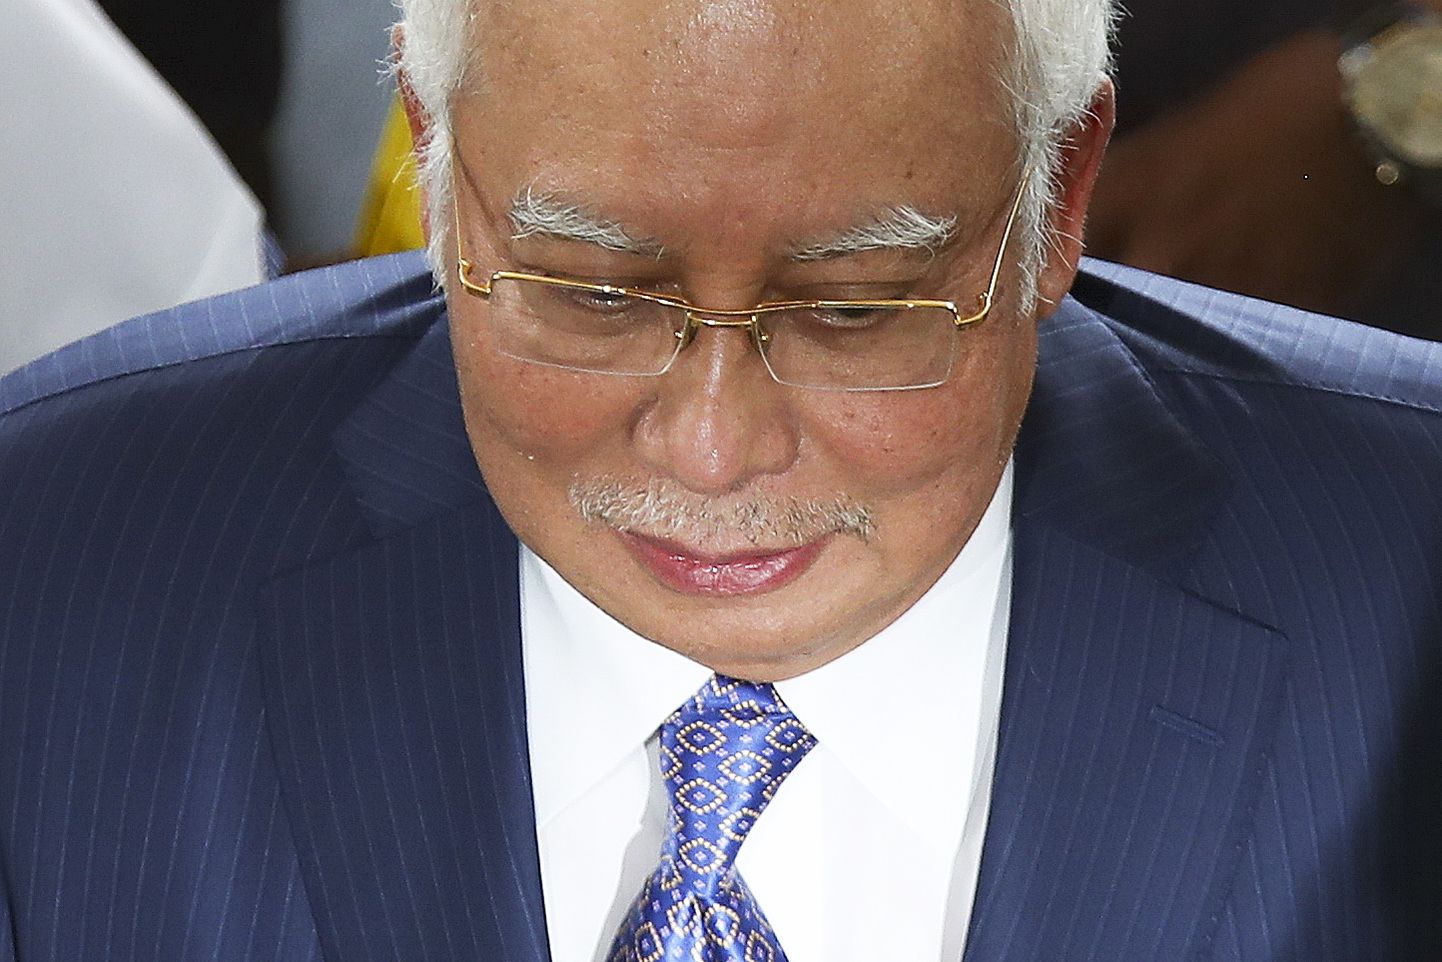 Malaisia ekspeaminister Najib Razab saabumas kolmapäeval Kuala Lumpuris kohtusse korruptsiooniprotsessile.